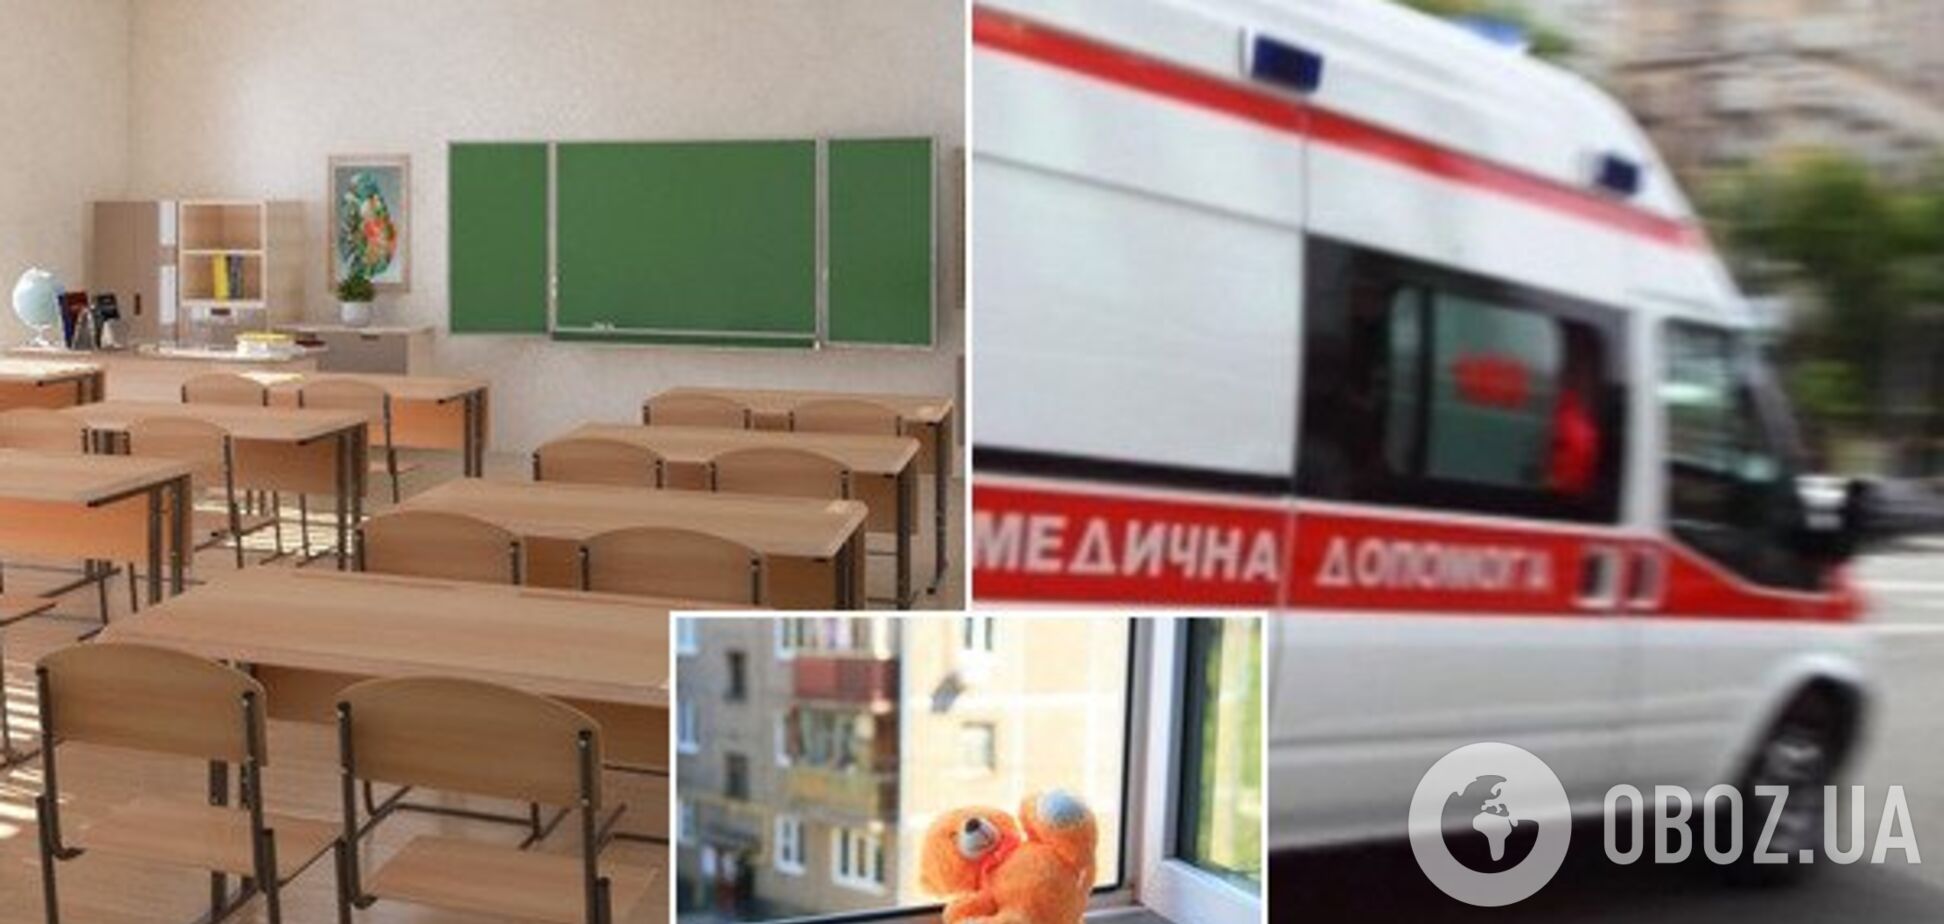 У Києві дівчинка вистрибнула з вікна школи